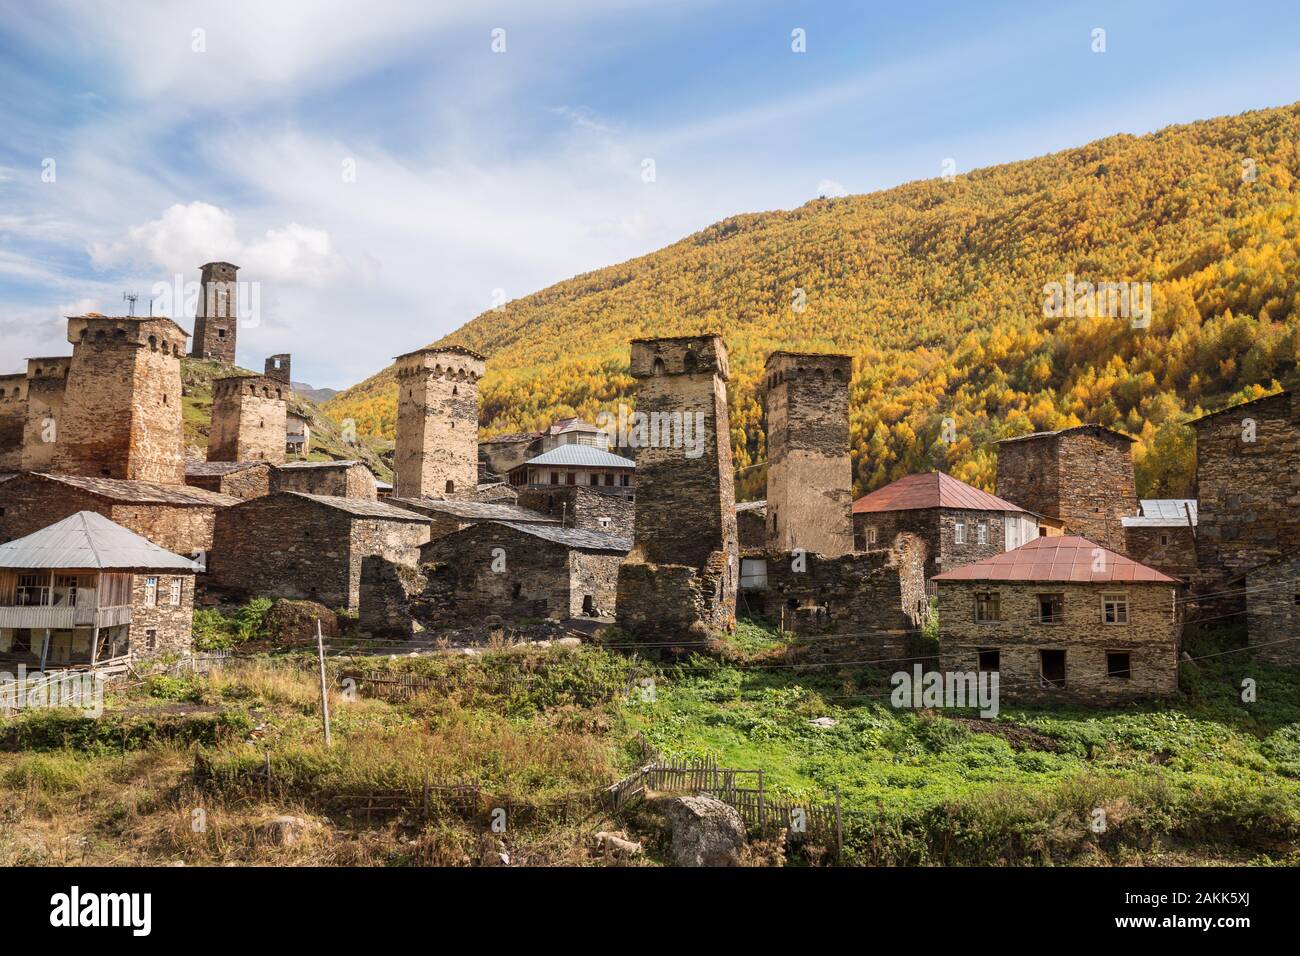 Svan tours dans village d'Ushguli contre fond de forêt d'automne sur la montagne. Magnifique paysage de montagne. Voyages du Caucase. La Géorgie, sva supérieure Banque D'Images